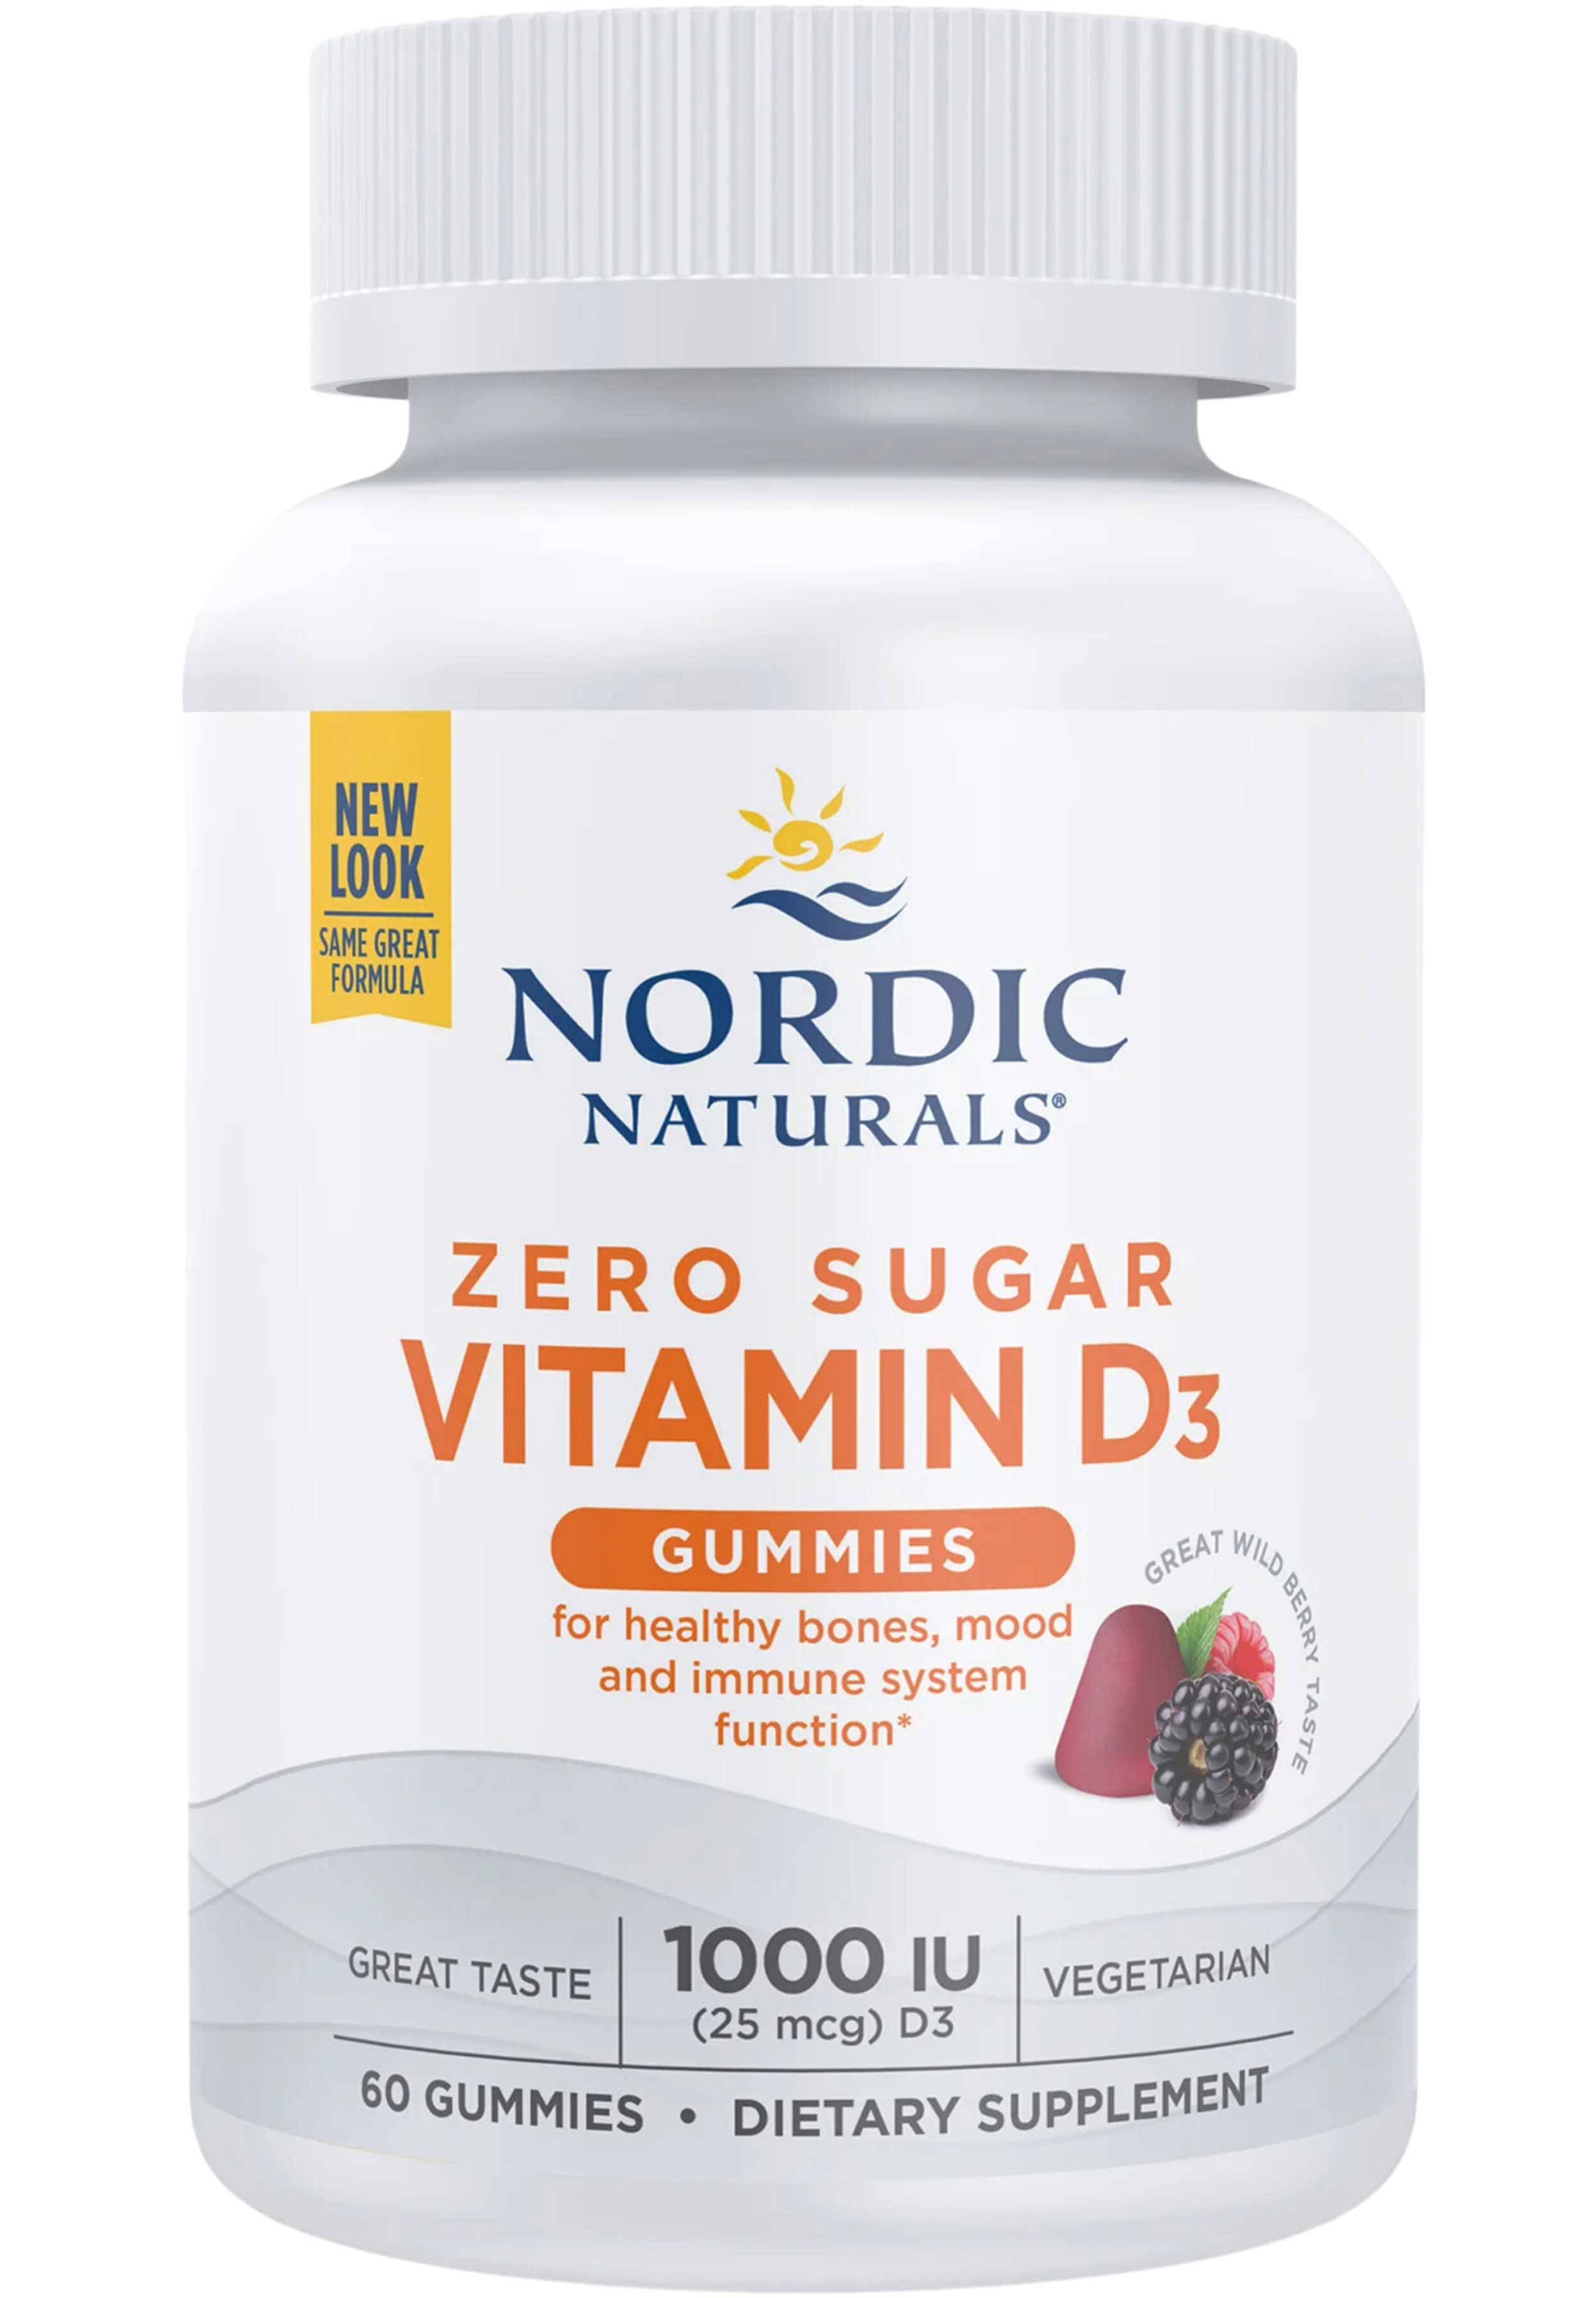 Nordic Naturals Zero Sugar Vitamin D3 Gummies